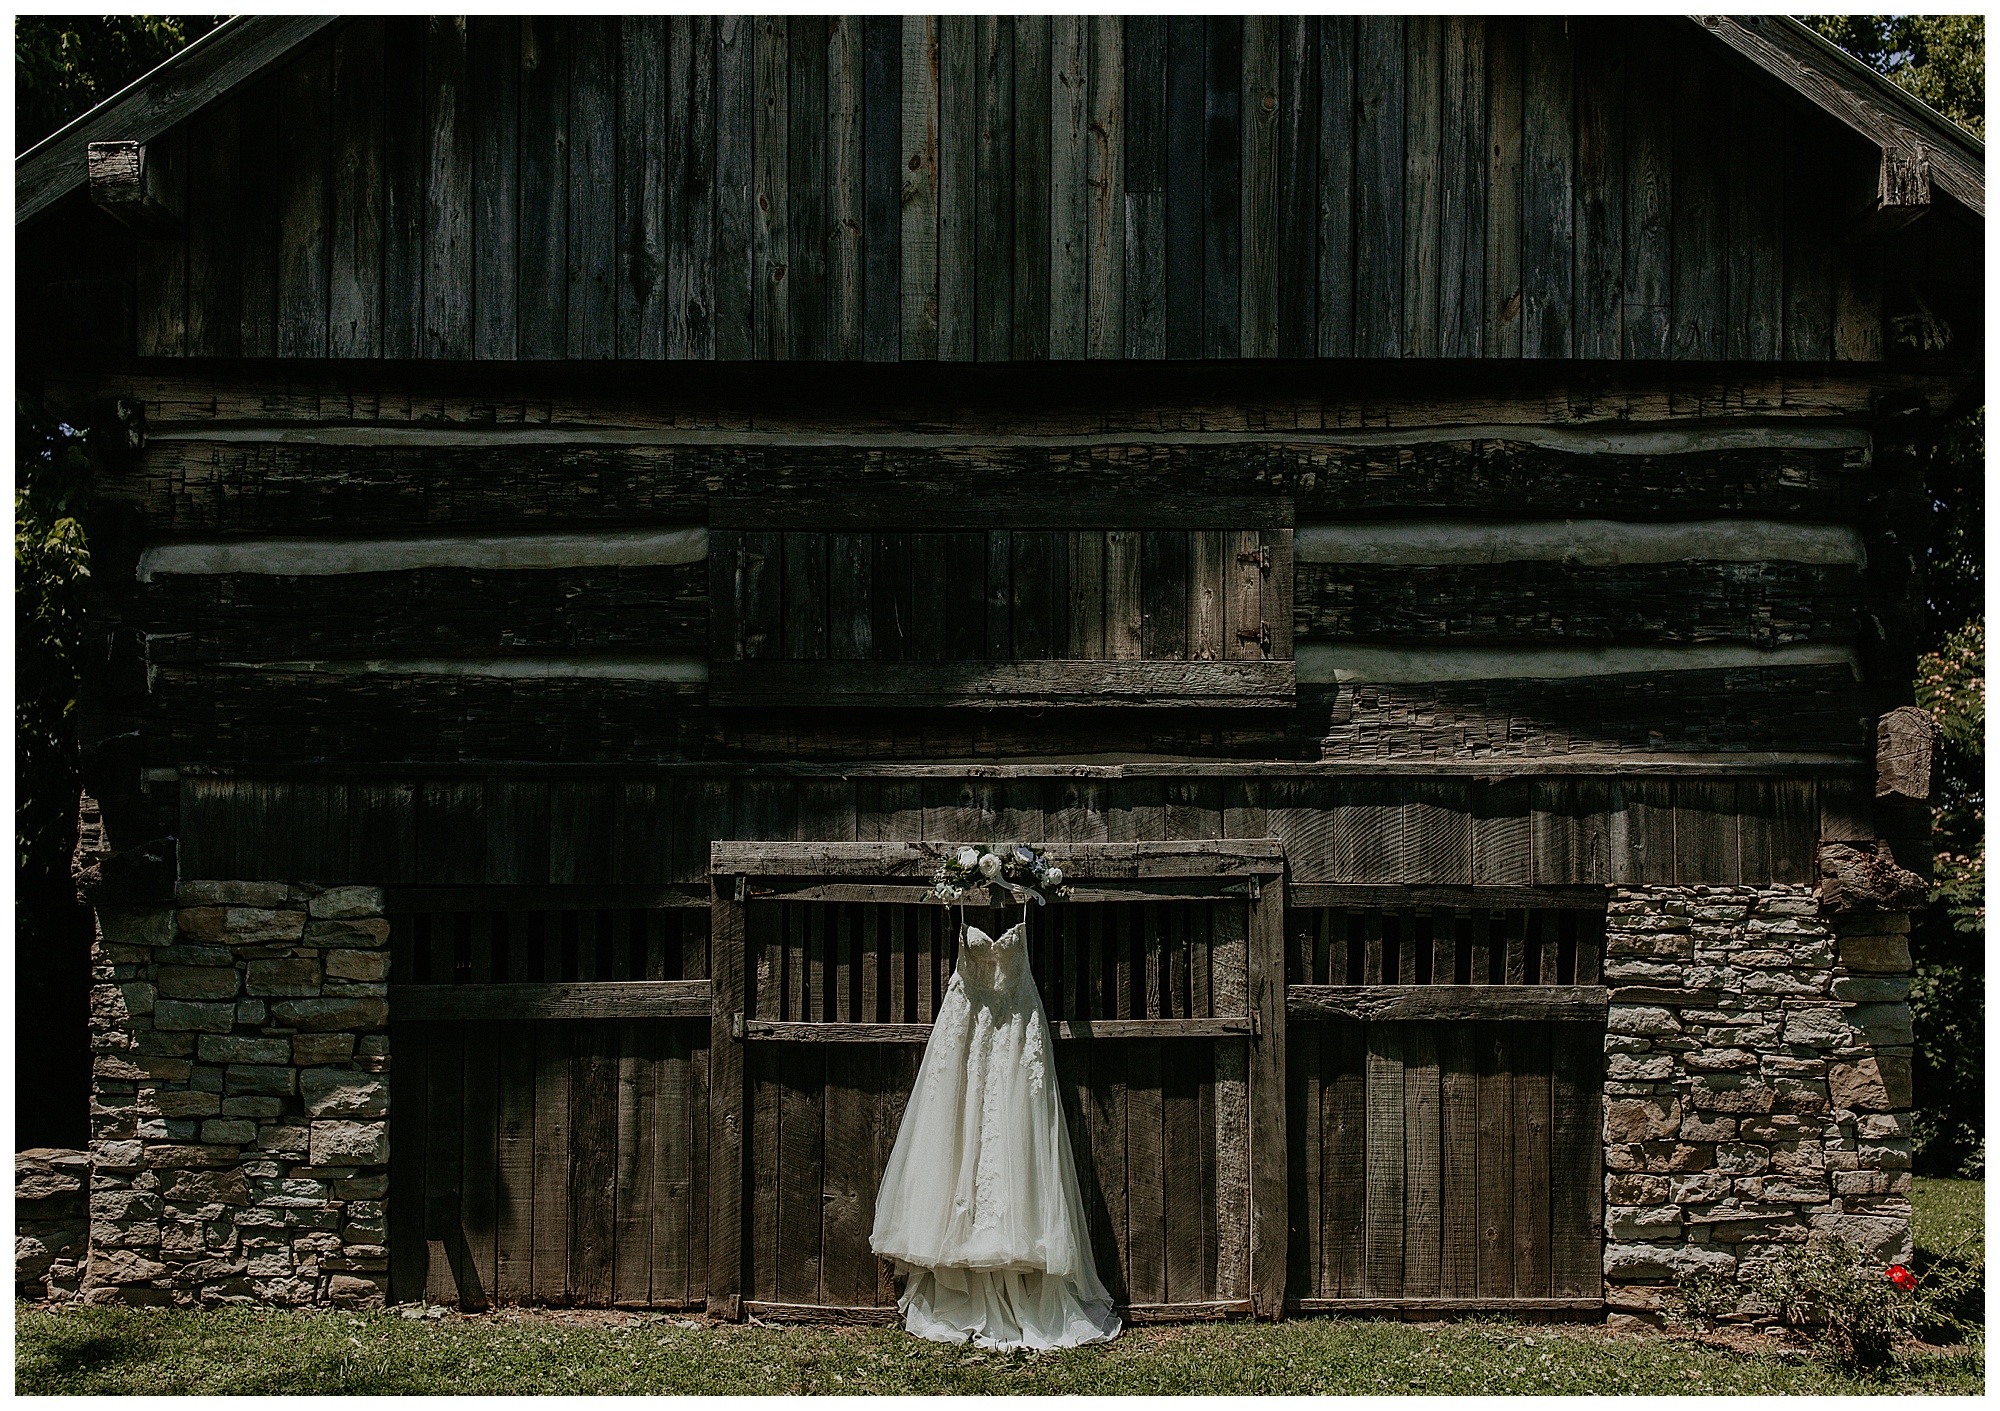 Lauren's wedding dress hangs on the barn door at Cool Springs House.